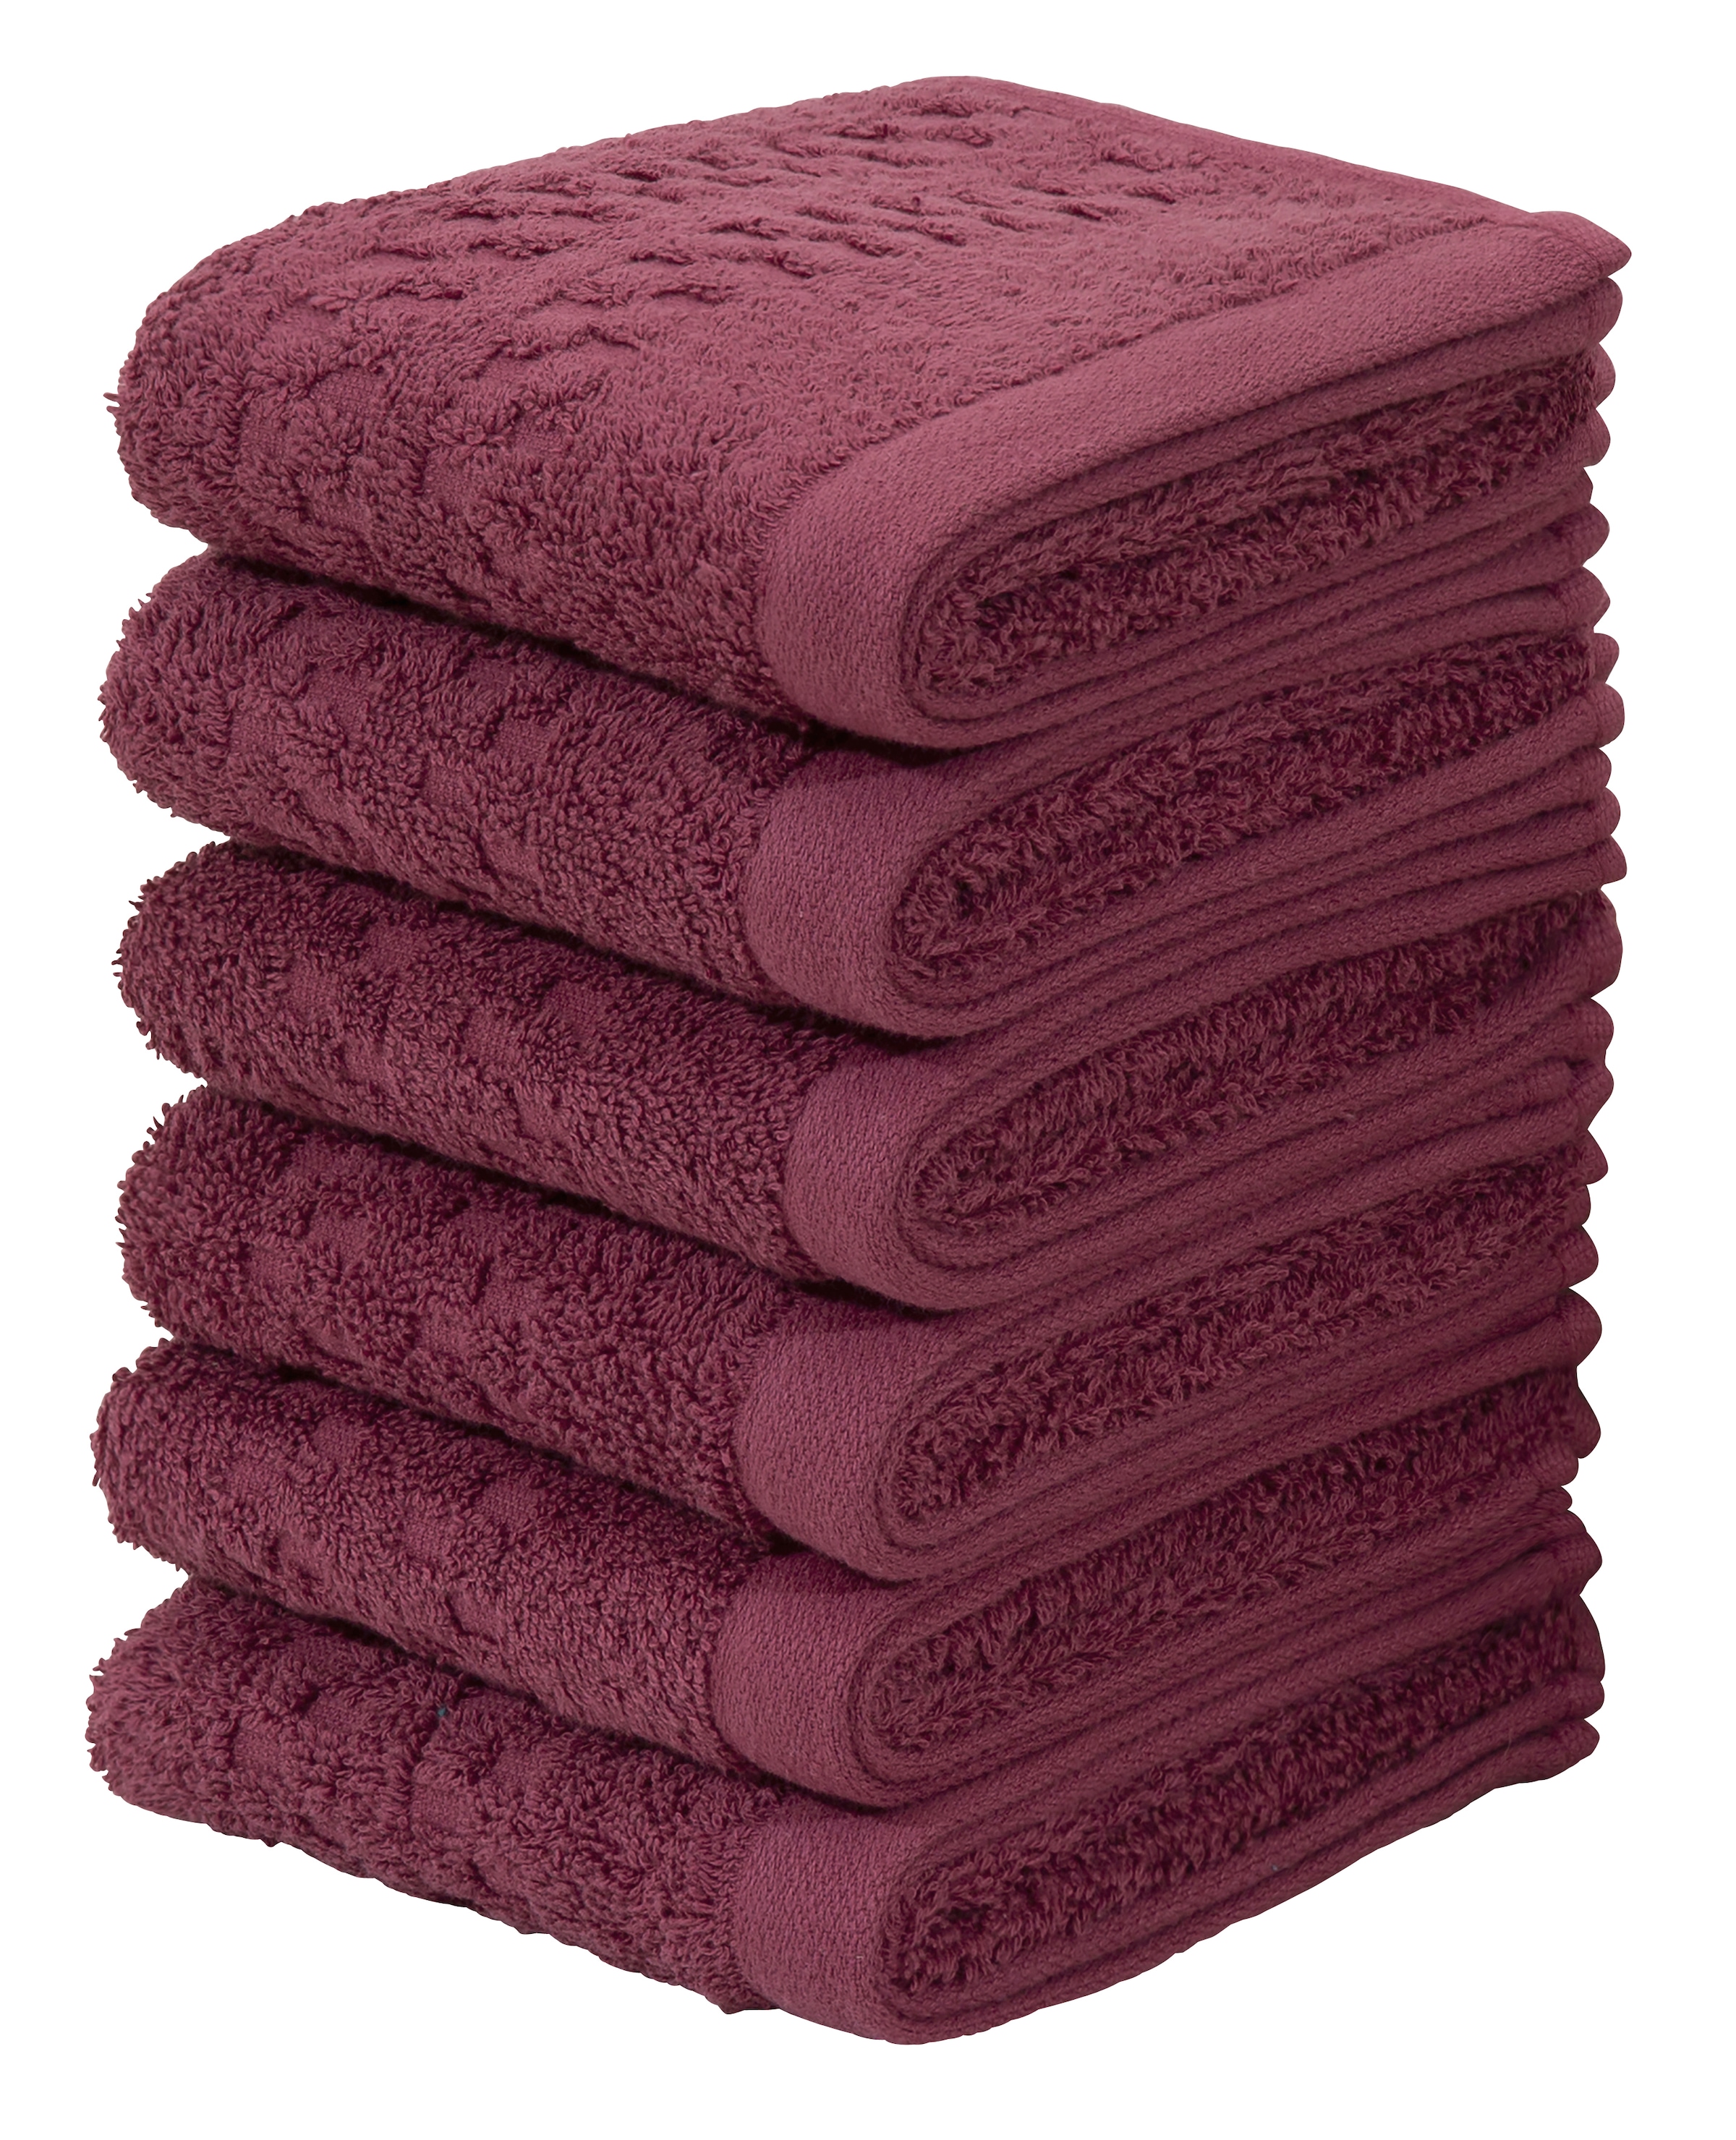 Die günstigen Neuerscheinungen von heute Nachhaltige Handtücher & Badetücher kaufen online